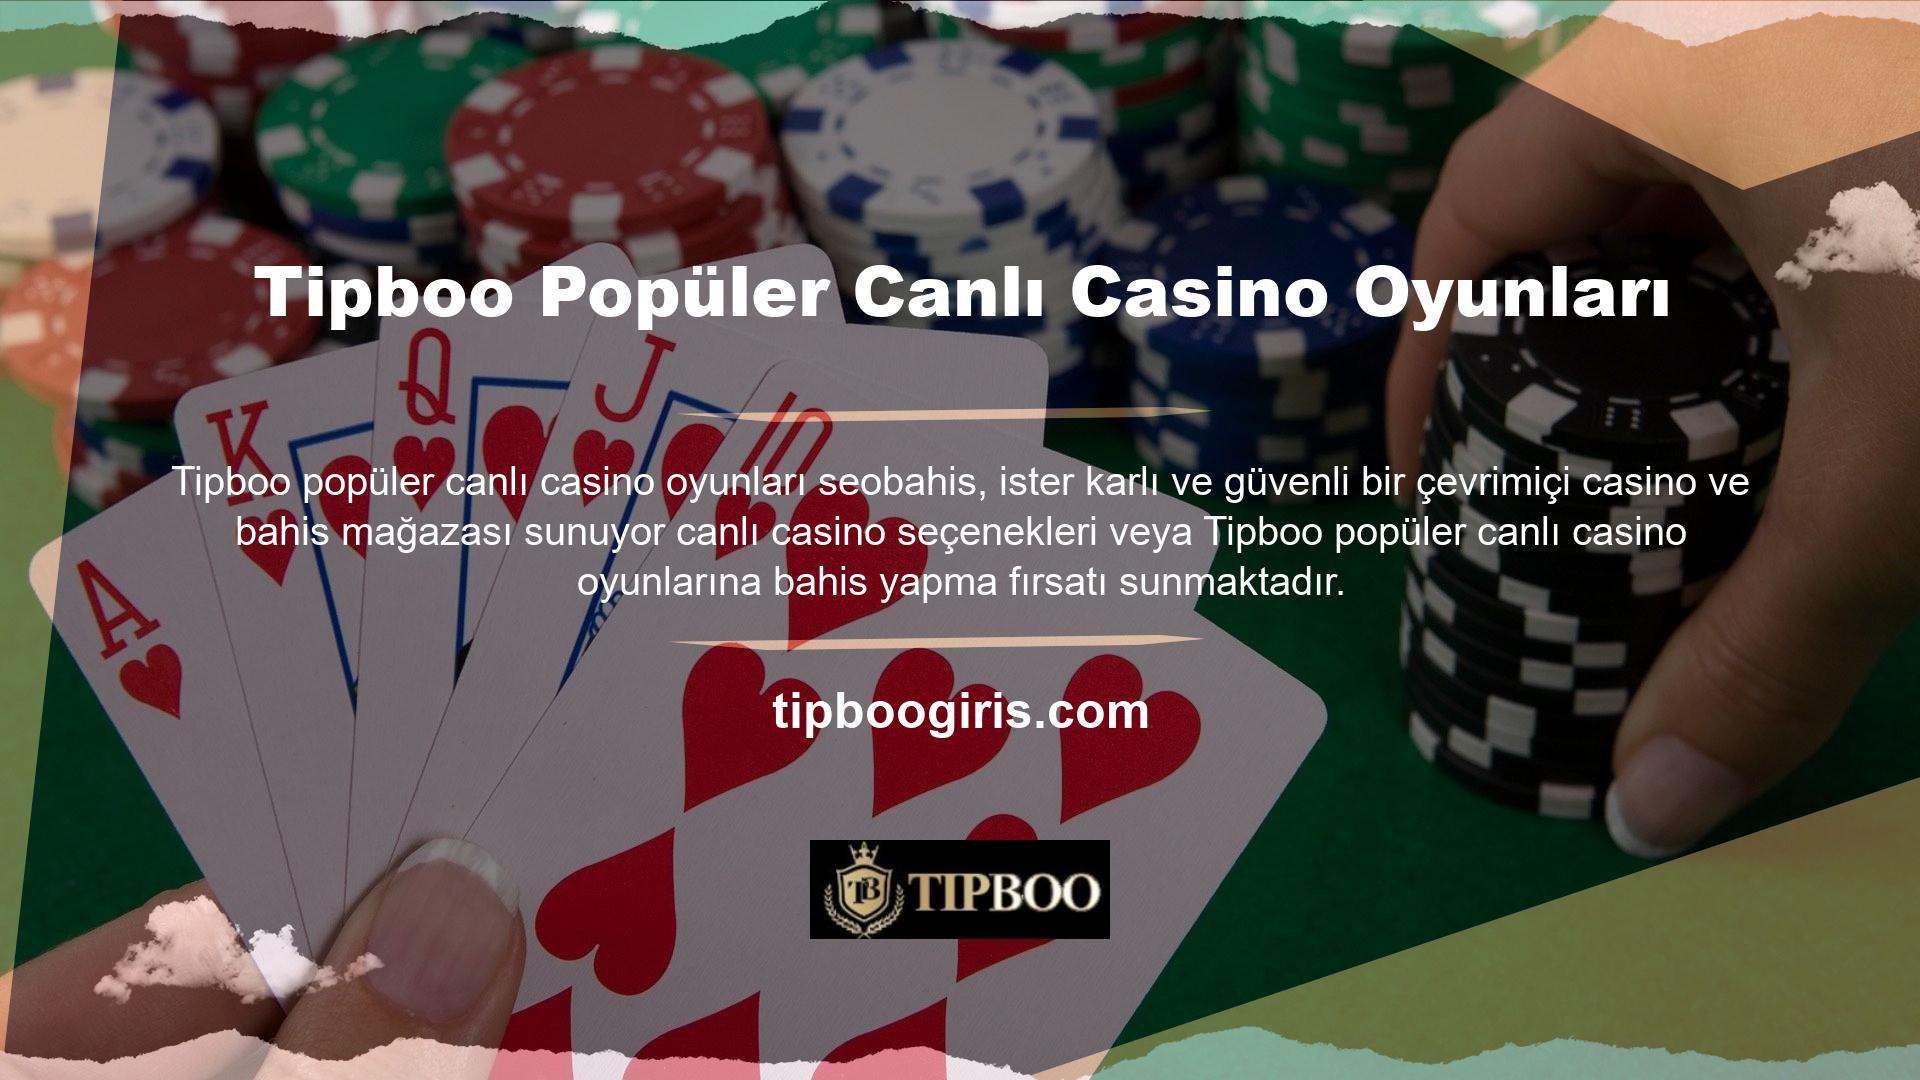 Tüm bu hizmetlerden yararlanmak ve premium casino oyunlarının keyfini güvenle çıkarmak istiyorsanız ancak üye değilseniz, lütfen en kısa sürede Tipboo ziyaret ederek üyelik işlemini tamamlayın